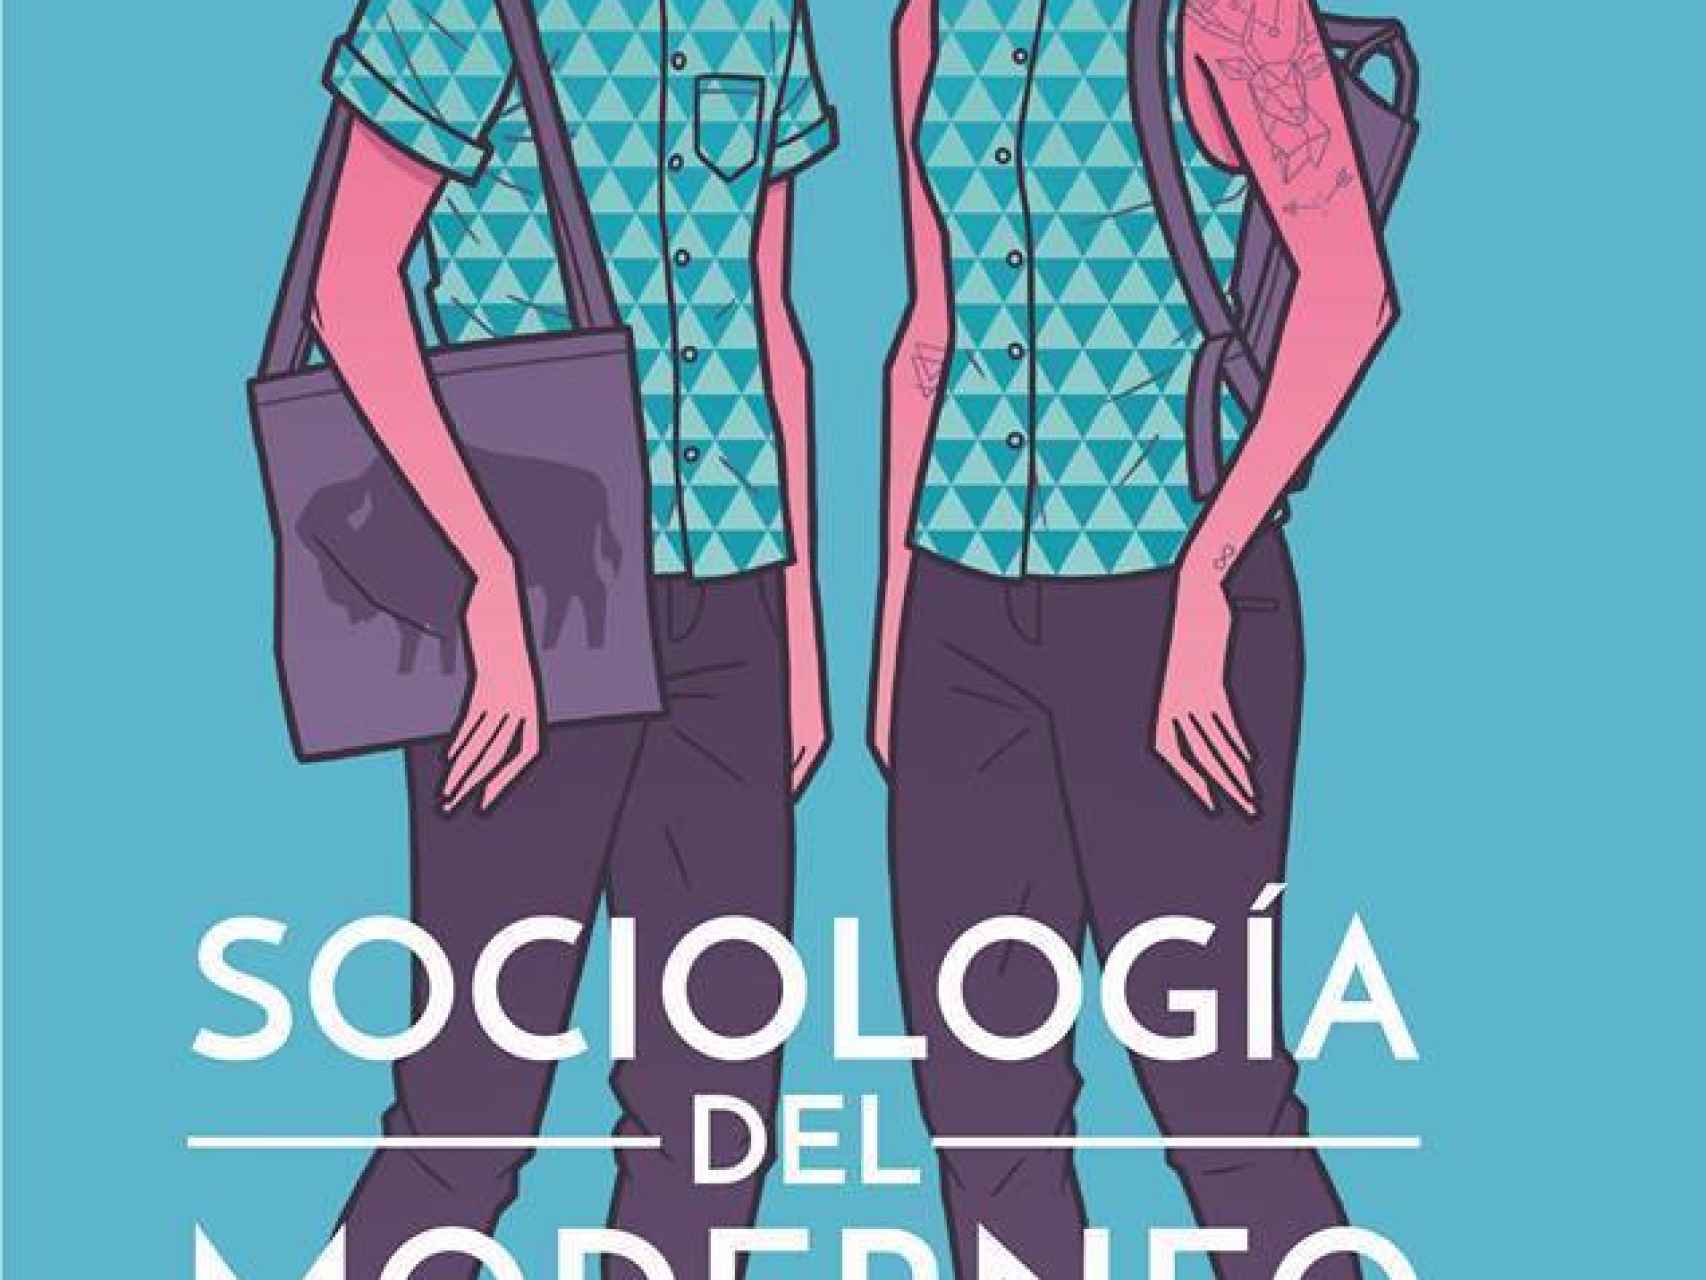 Portada de Sociología del moderneo, de Iñaki Domínguez.